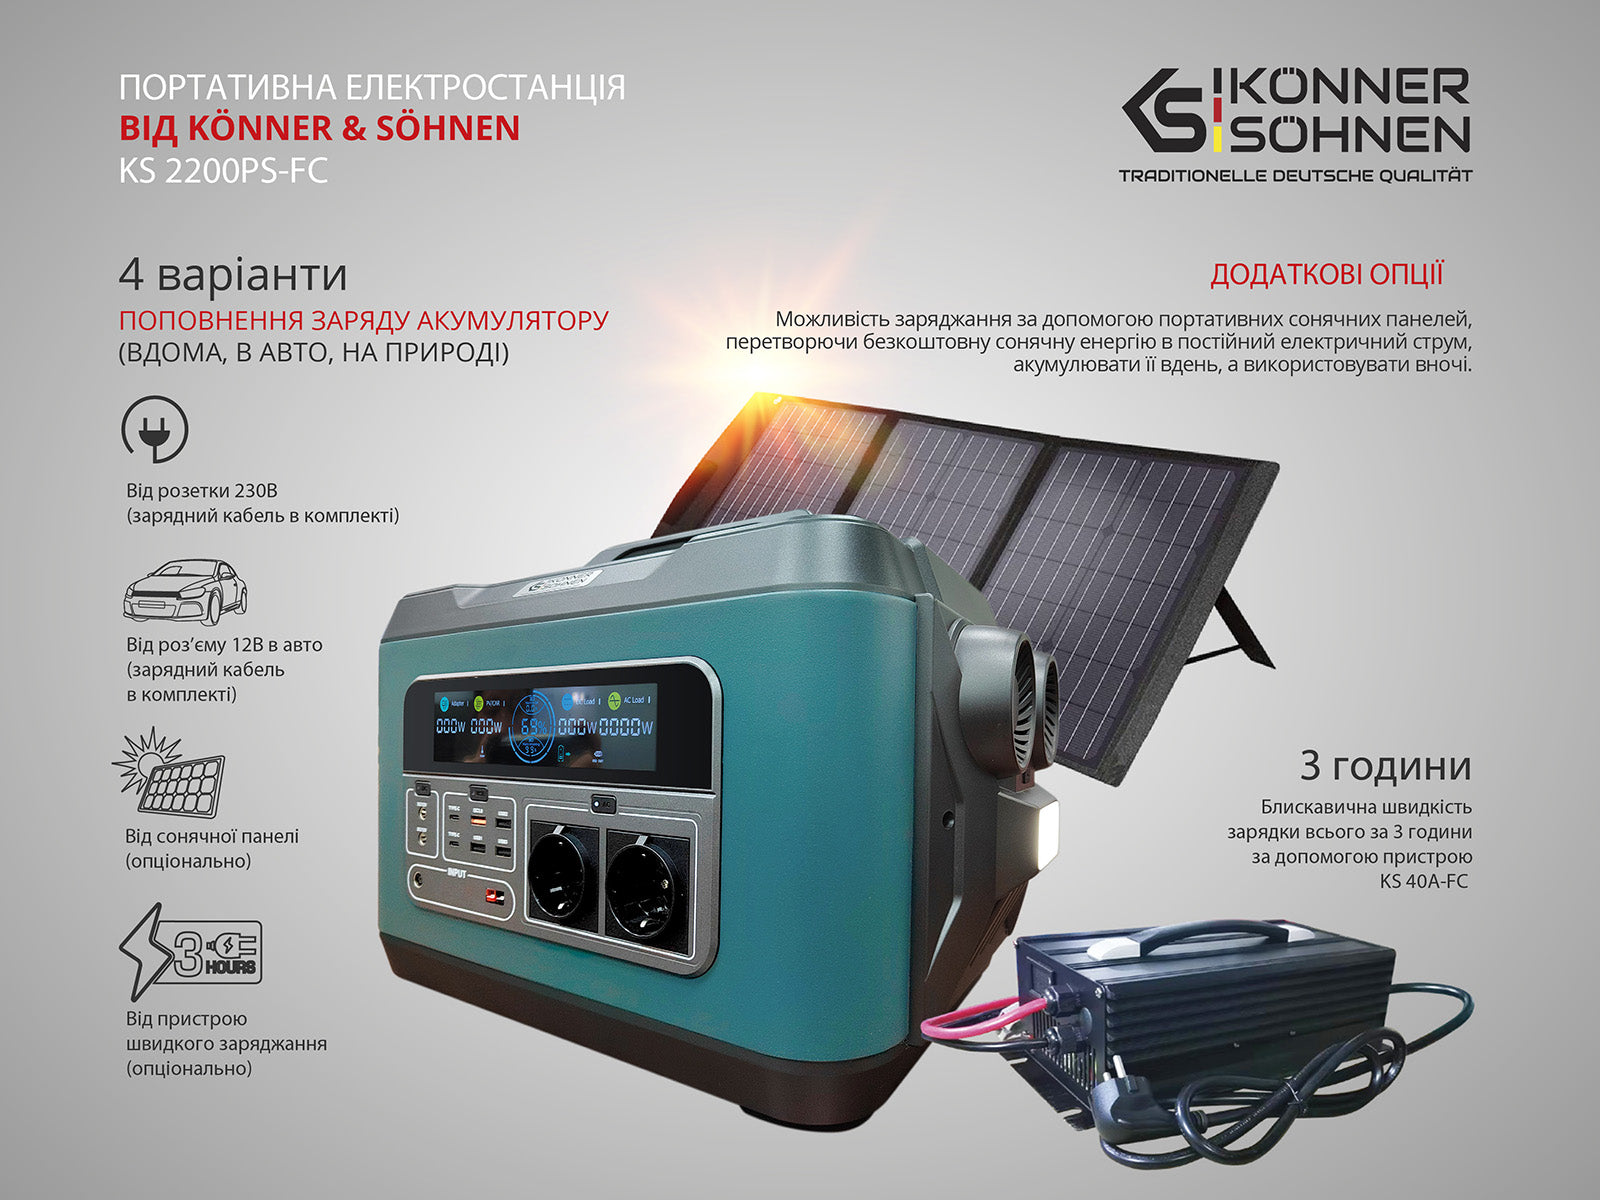 Портативна (переносна) електростанція KS 2200PS-FC